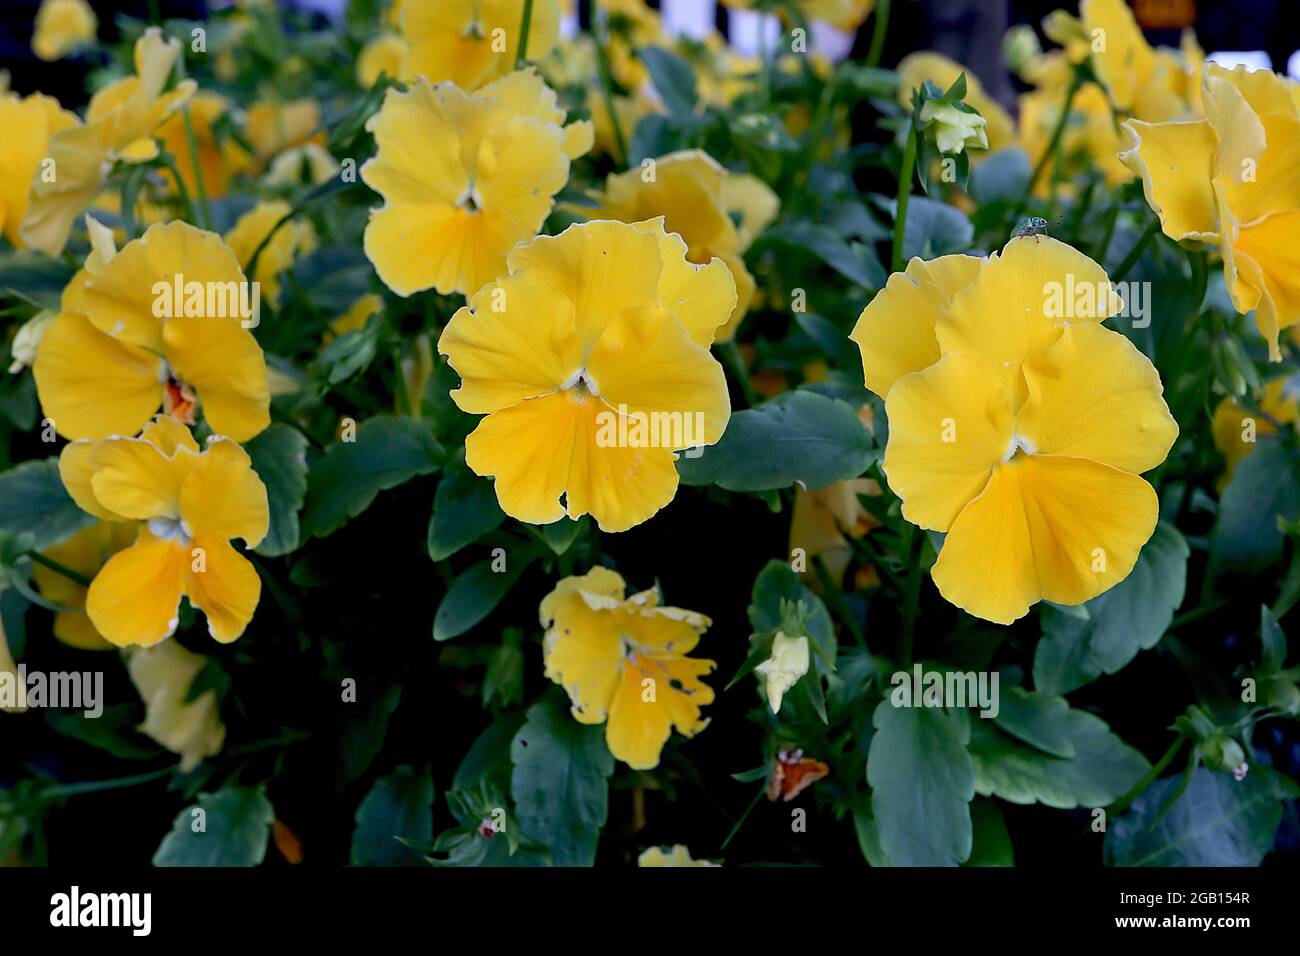 Viola cornuta 'Penny Clear Yellow' Pansy Clear Yellow – flores amarillas doradas con tufts blancos centrales, junio, Inglaterra, Reino Unido Foto de stock